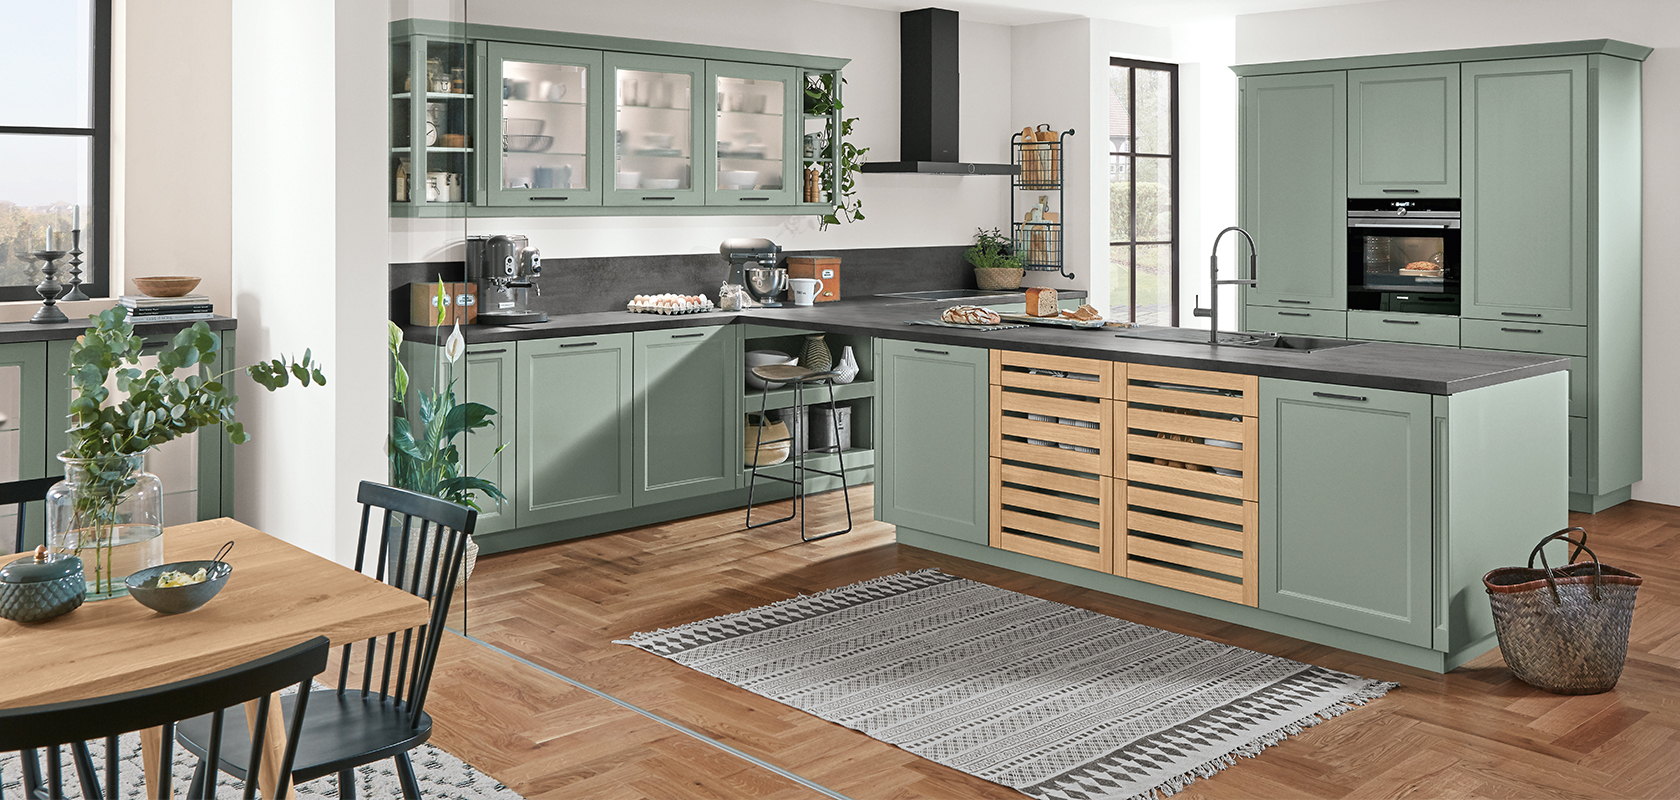 Ruime keuken met saliegroene kasten, moderne apparaten en een houten vloer, aangevuld met natuurlijk licht en fris groen.